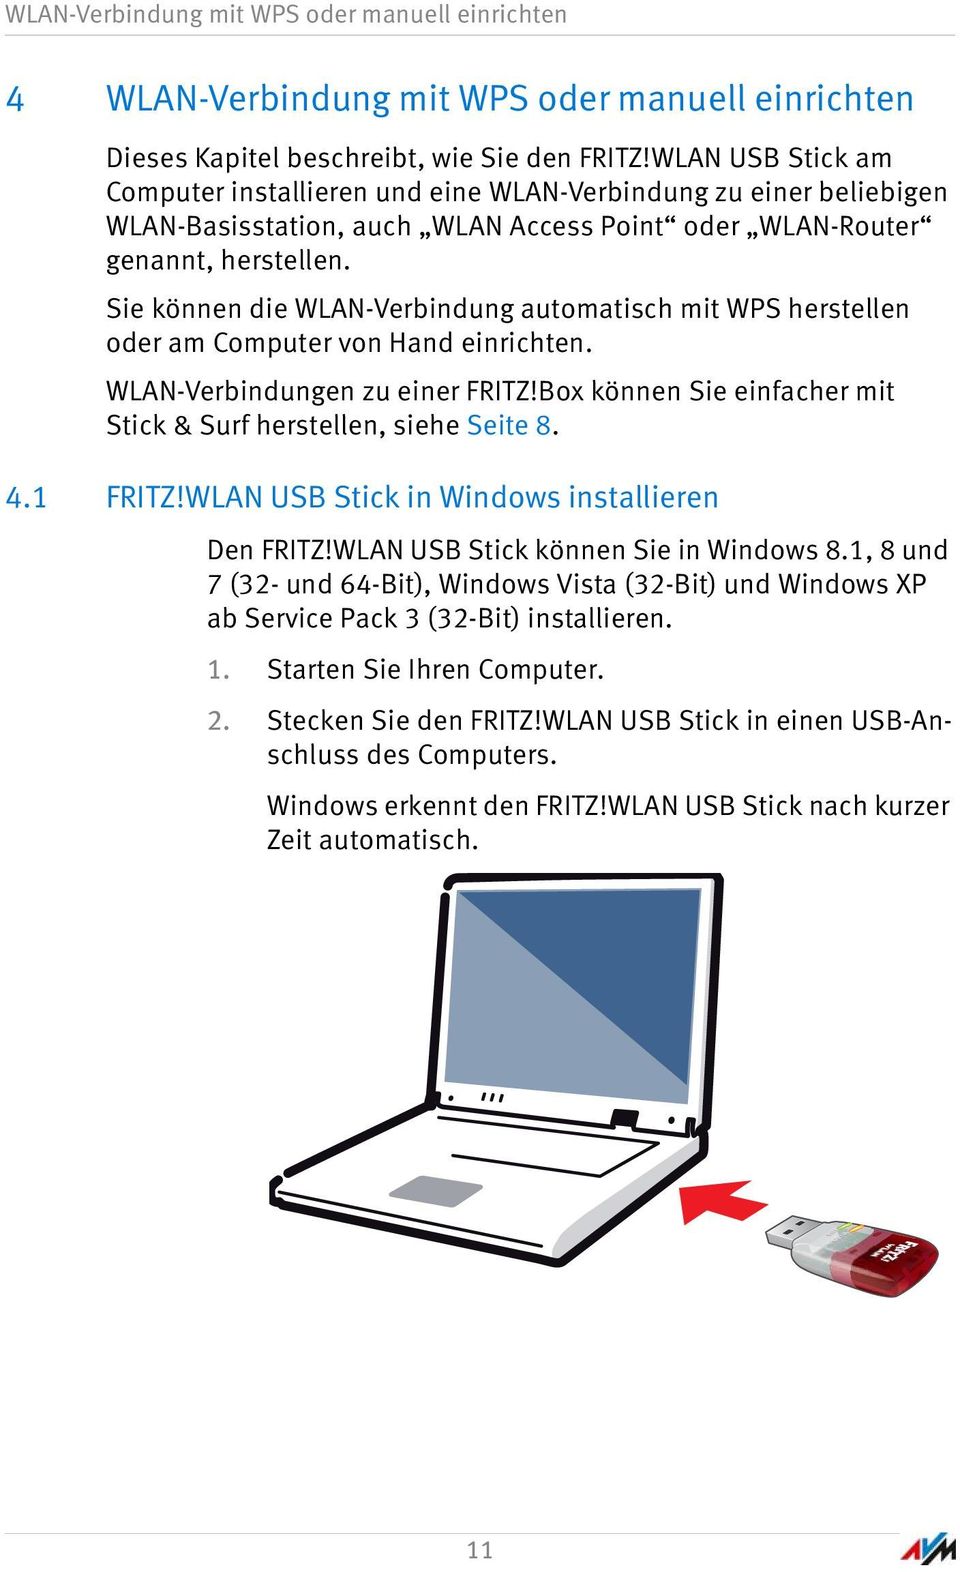 FRITZ!WLAN USB Stick AC 430. Einrichten und bedienen - PDF Kostenfreier  Download